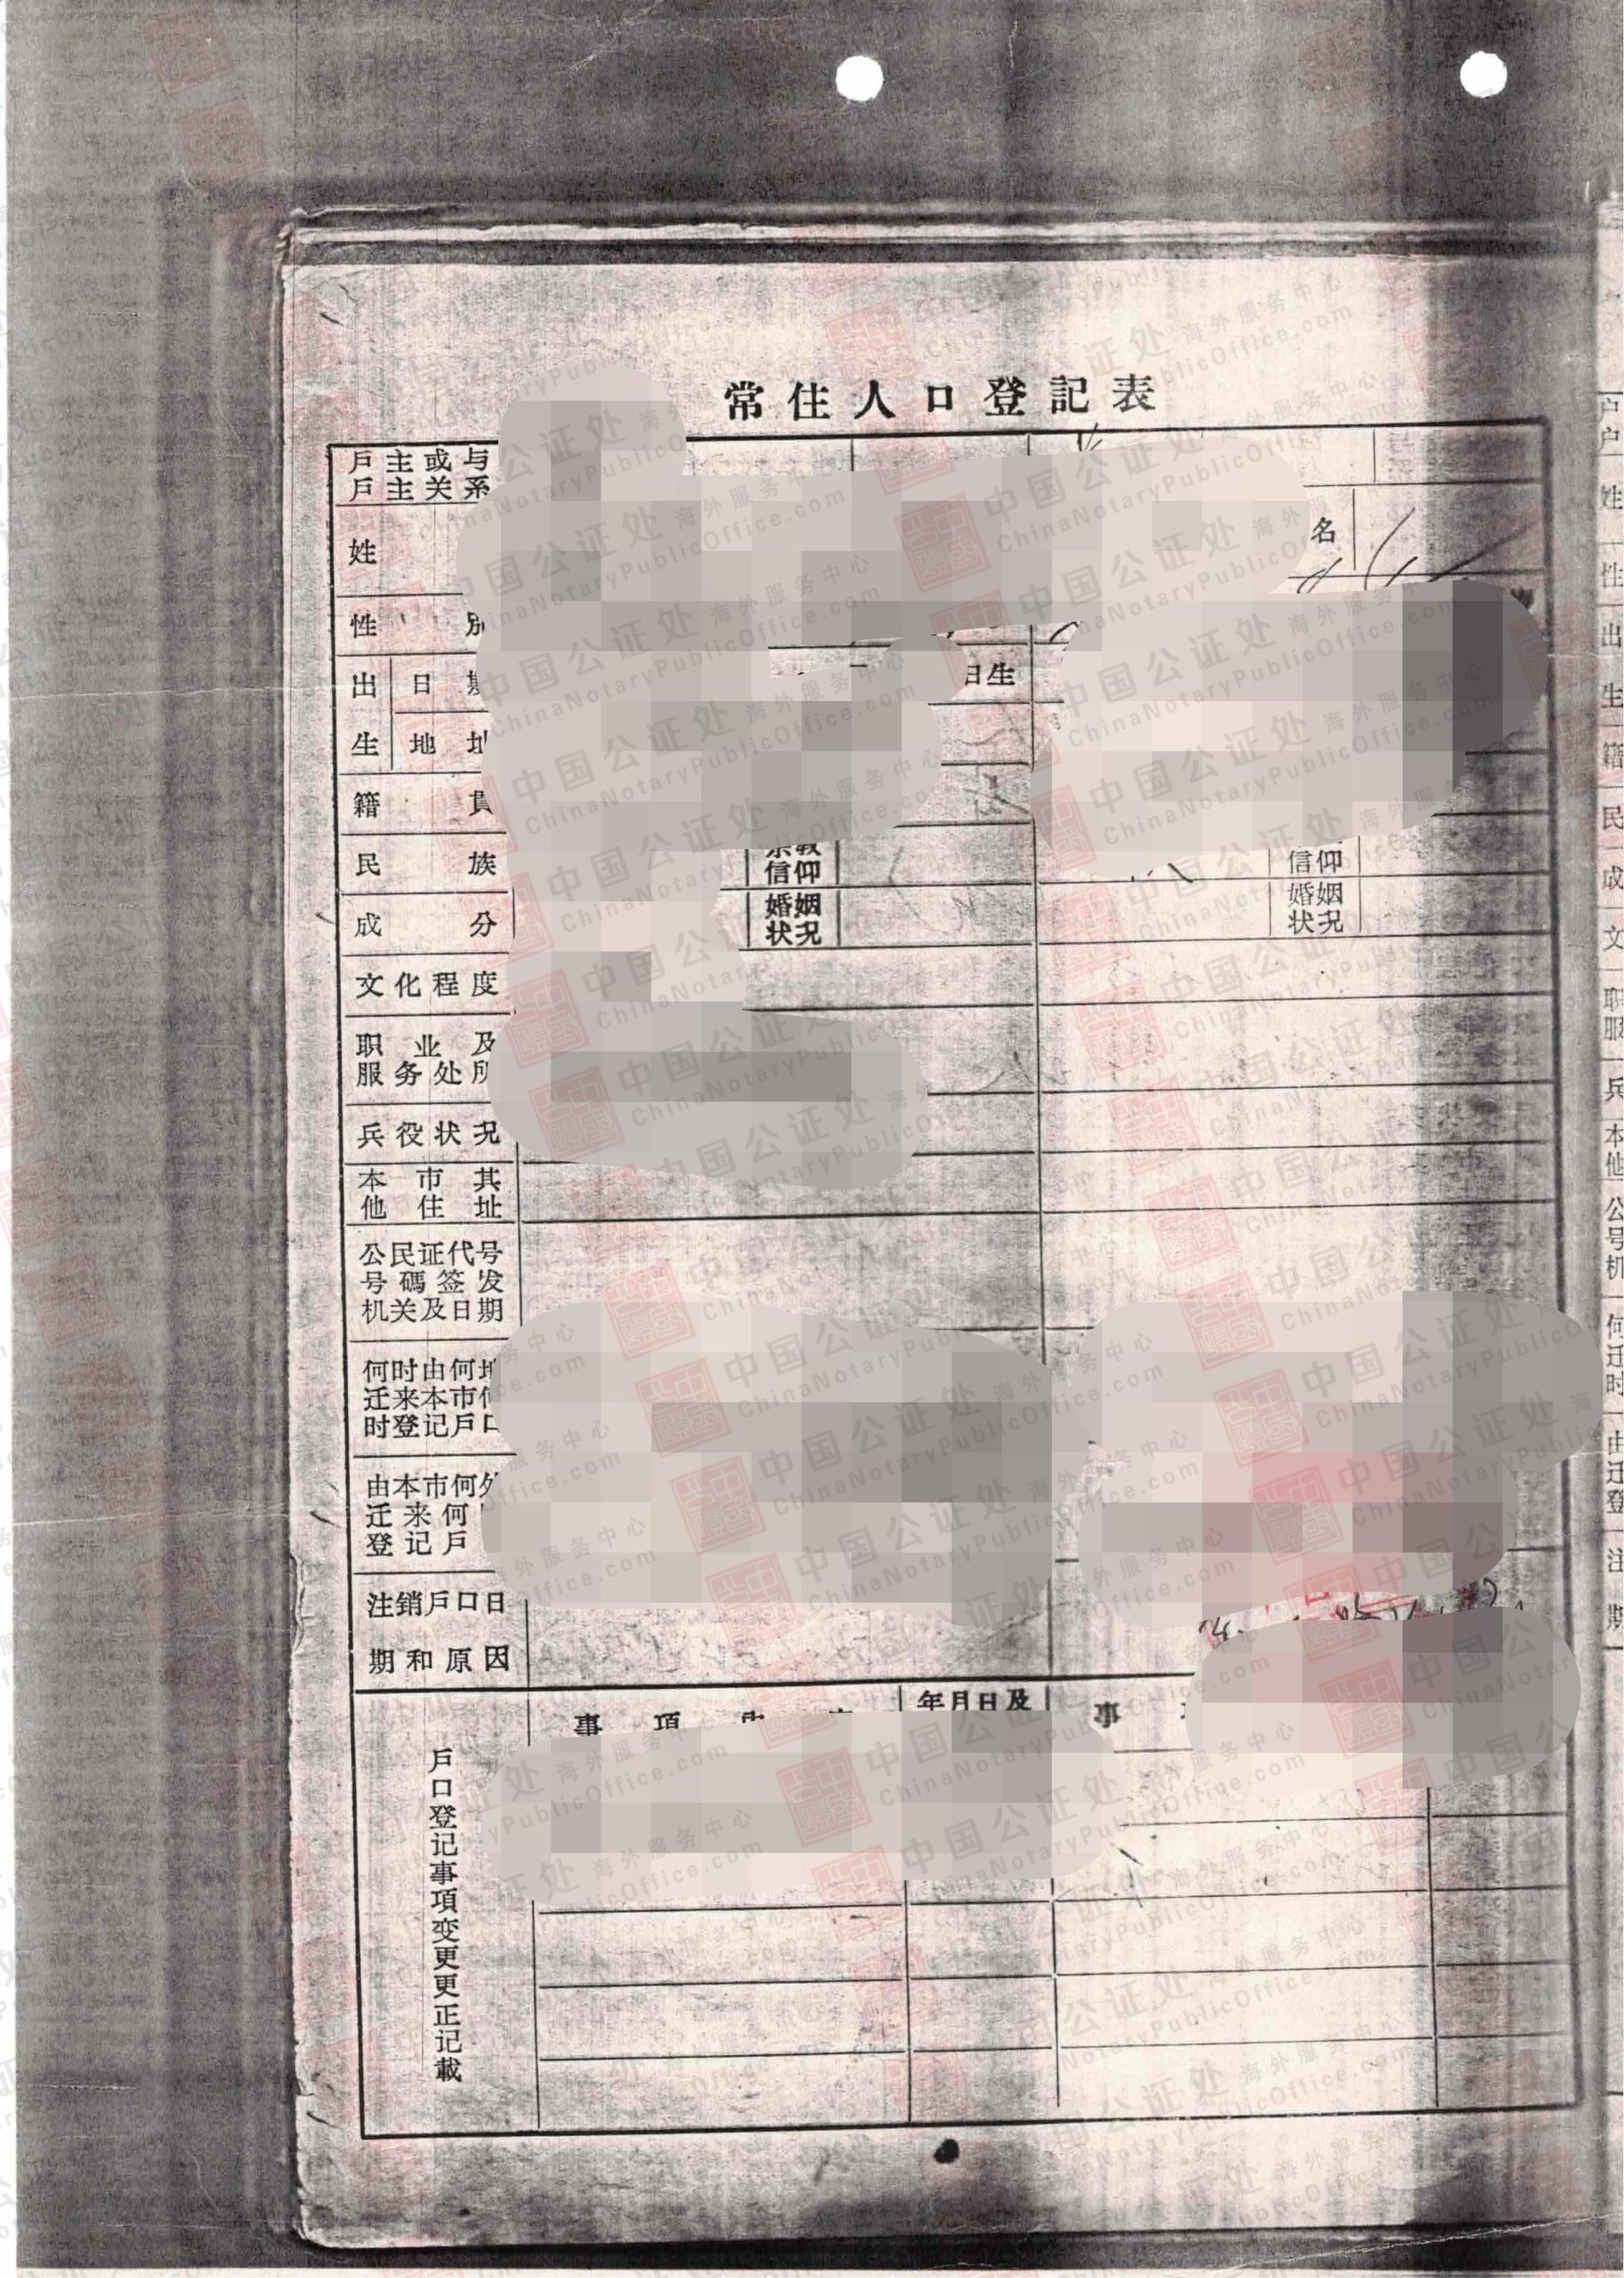 户口簿出生证明，派出所出生证明，居委会出生证明，中国公证处海外服务中心